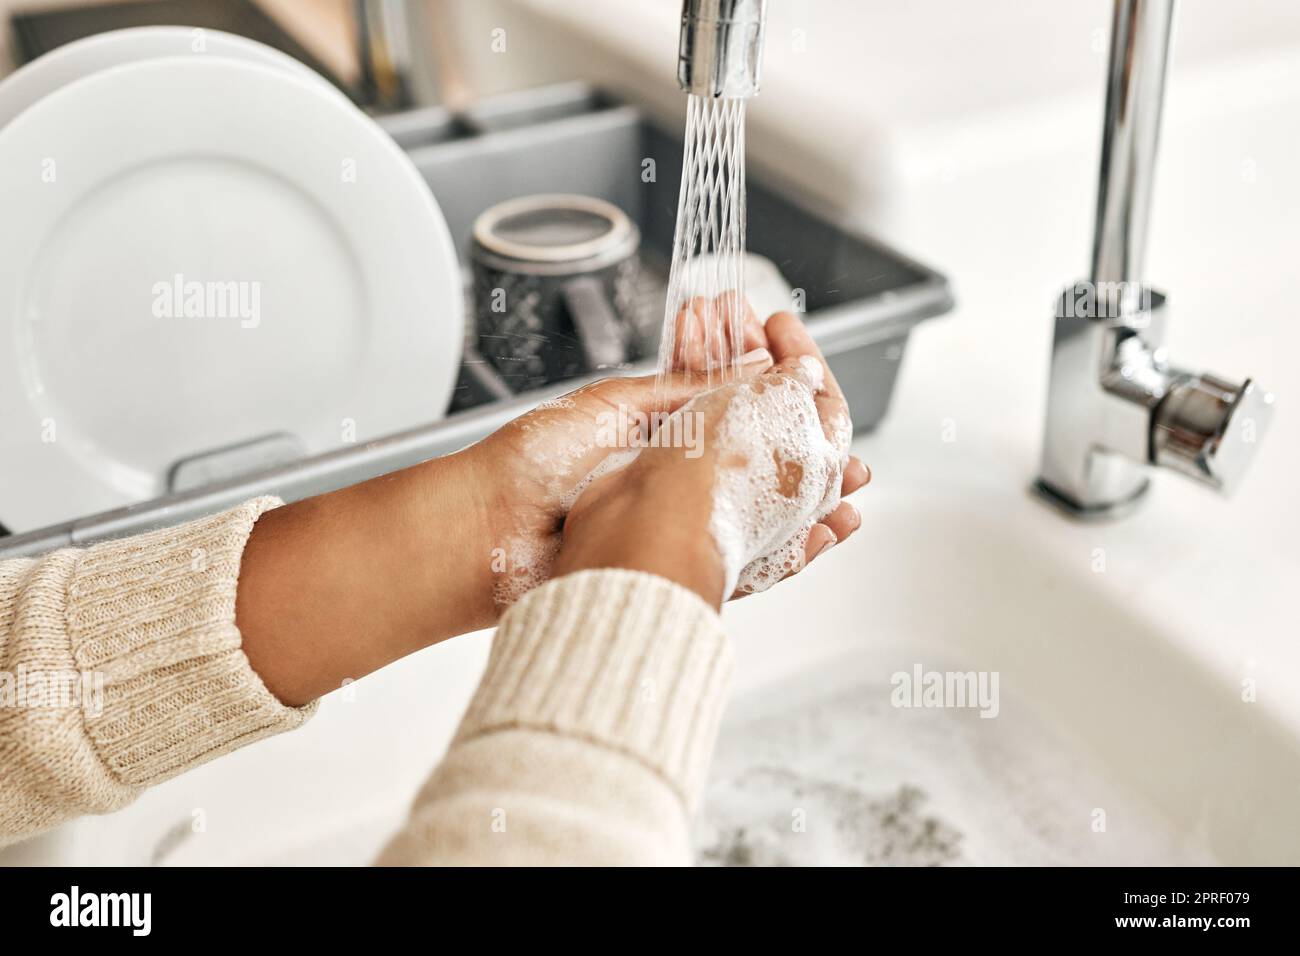 Hygiène, nettoyage et lavage des mains avec du savon et de l'eau dans l'évier de cuisine à la maison. Fermeture d'un laitage et d'un rinçage féminins pour désinfecter, protéger et prévenir la propagation du virus et des germes Banque D'Images